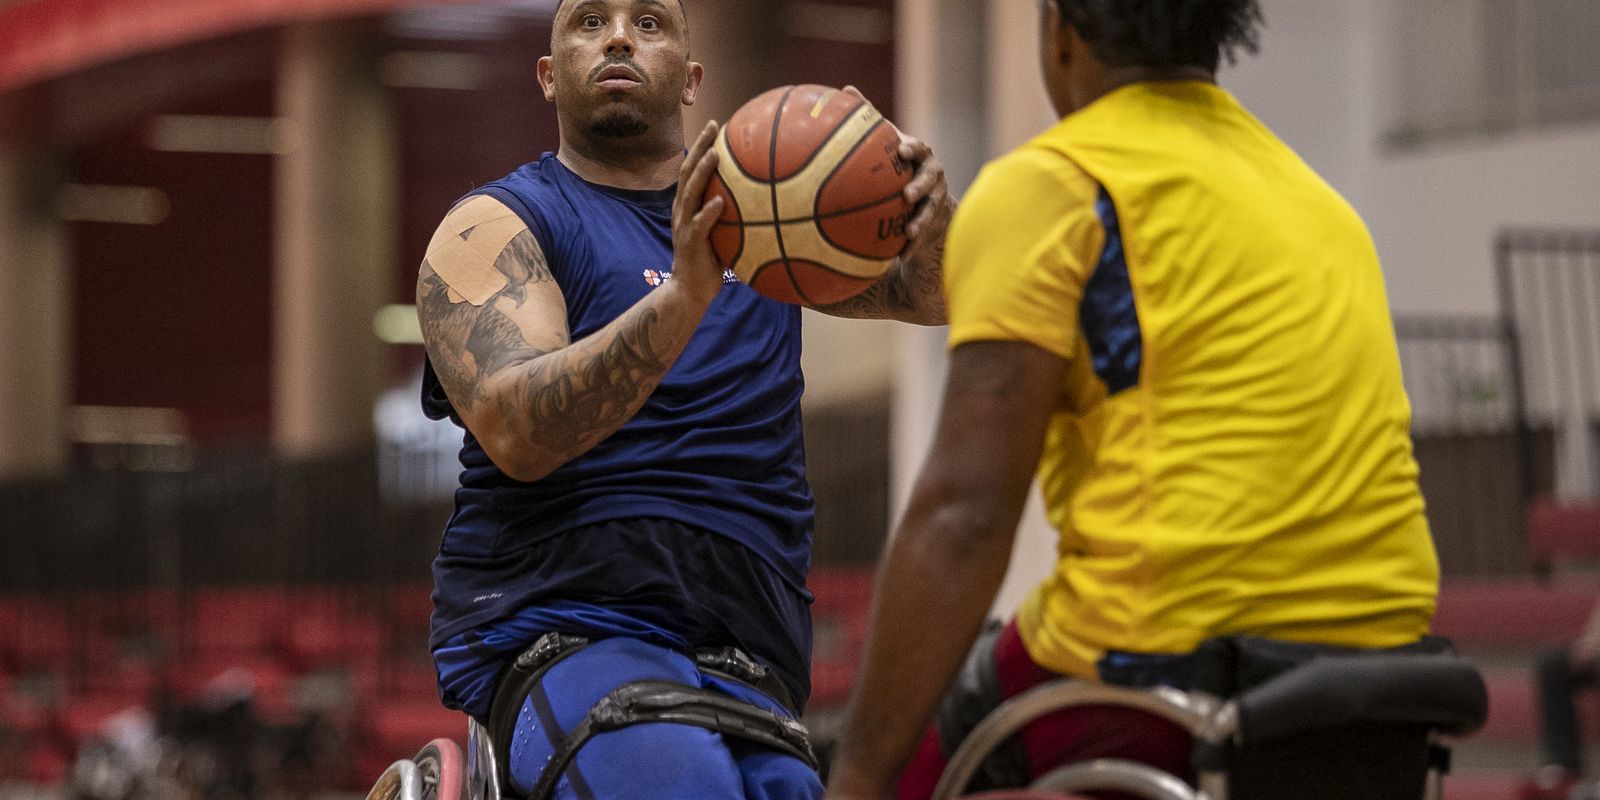 Leandro de Miranda - basquete paralímpico - Treino da Seleção Brasileira de basquete em CR no CT Paralímpico Brasileiro - 29/09/2021